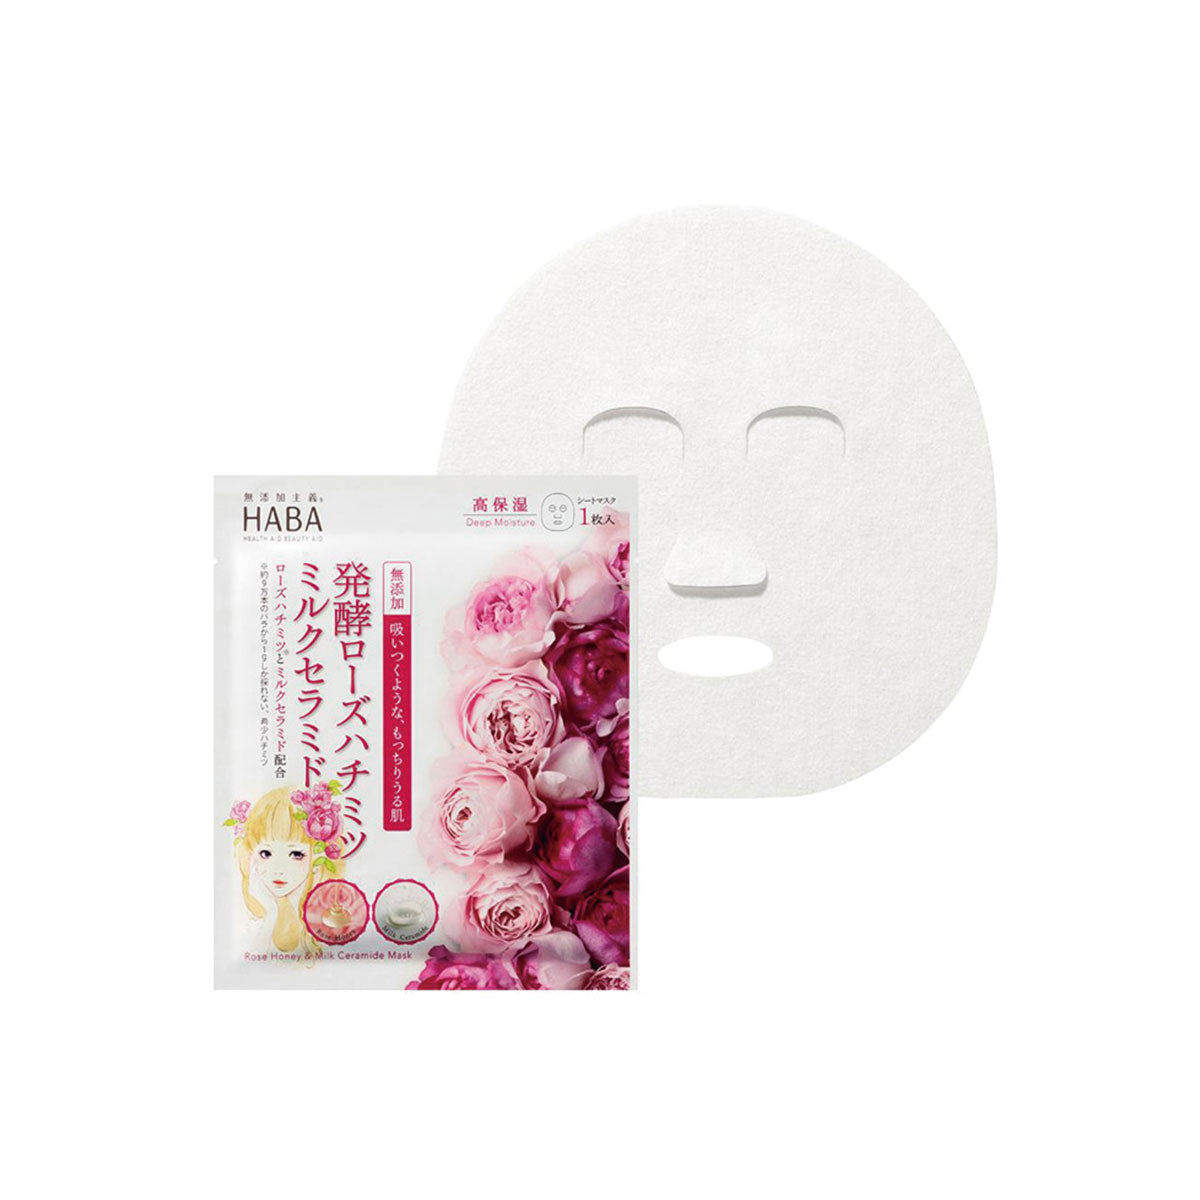 日本HABA玫瑰蜂蜜牛奶神经酰胺面膜 1 片